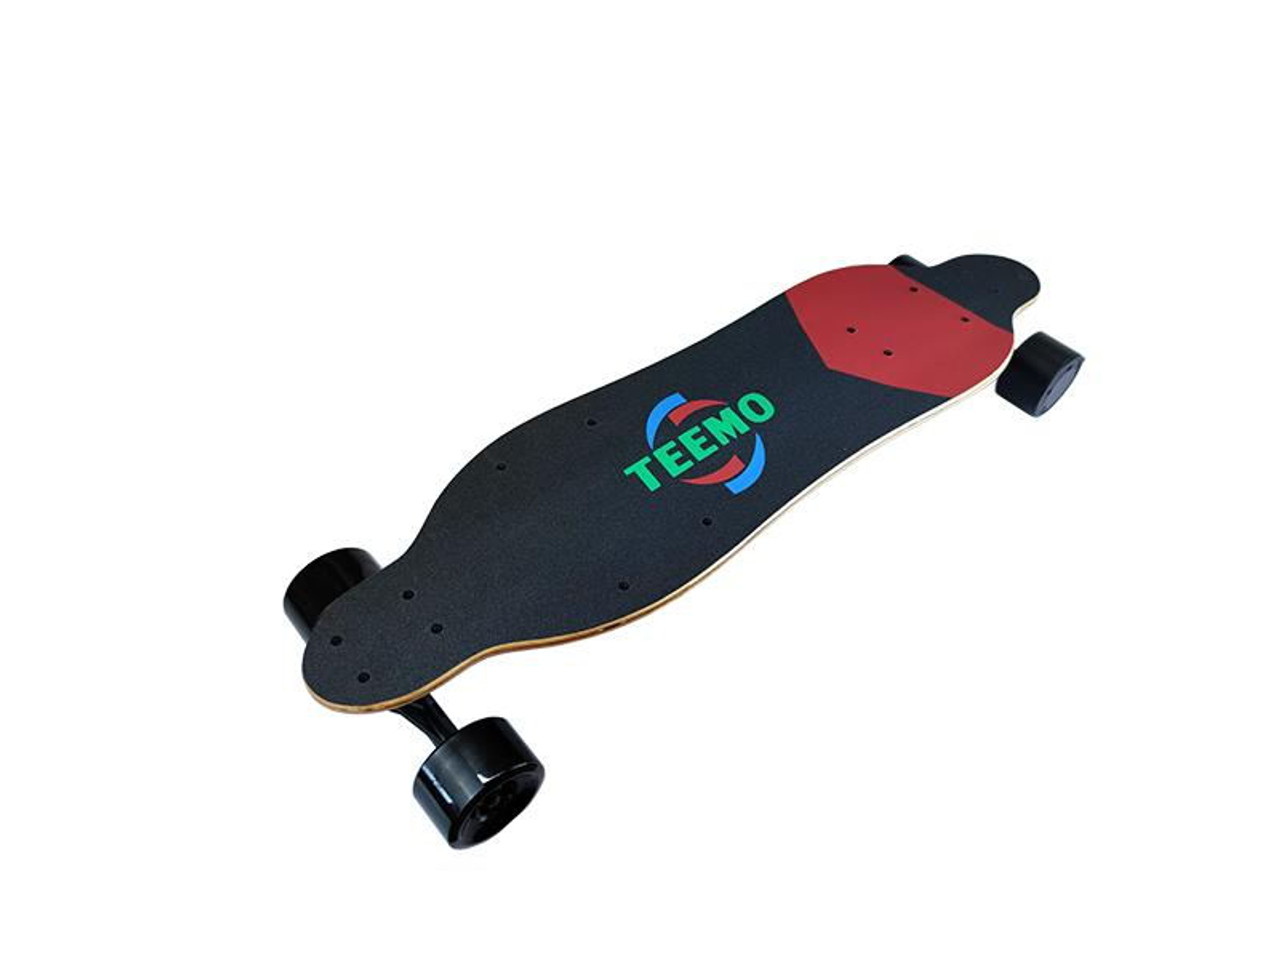 Teemoboard M-1 Longboard- Electric Skateboard with